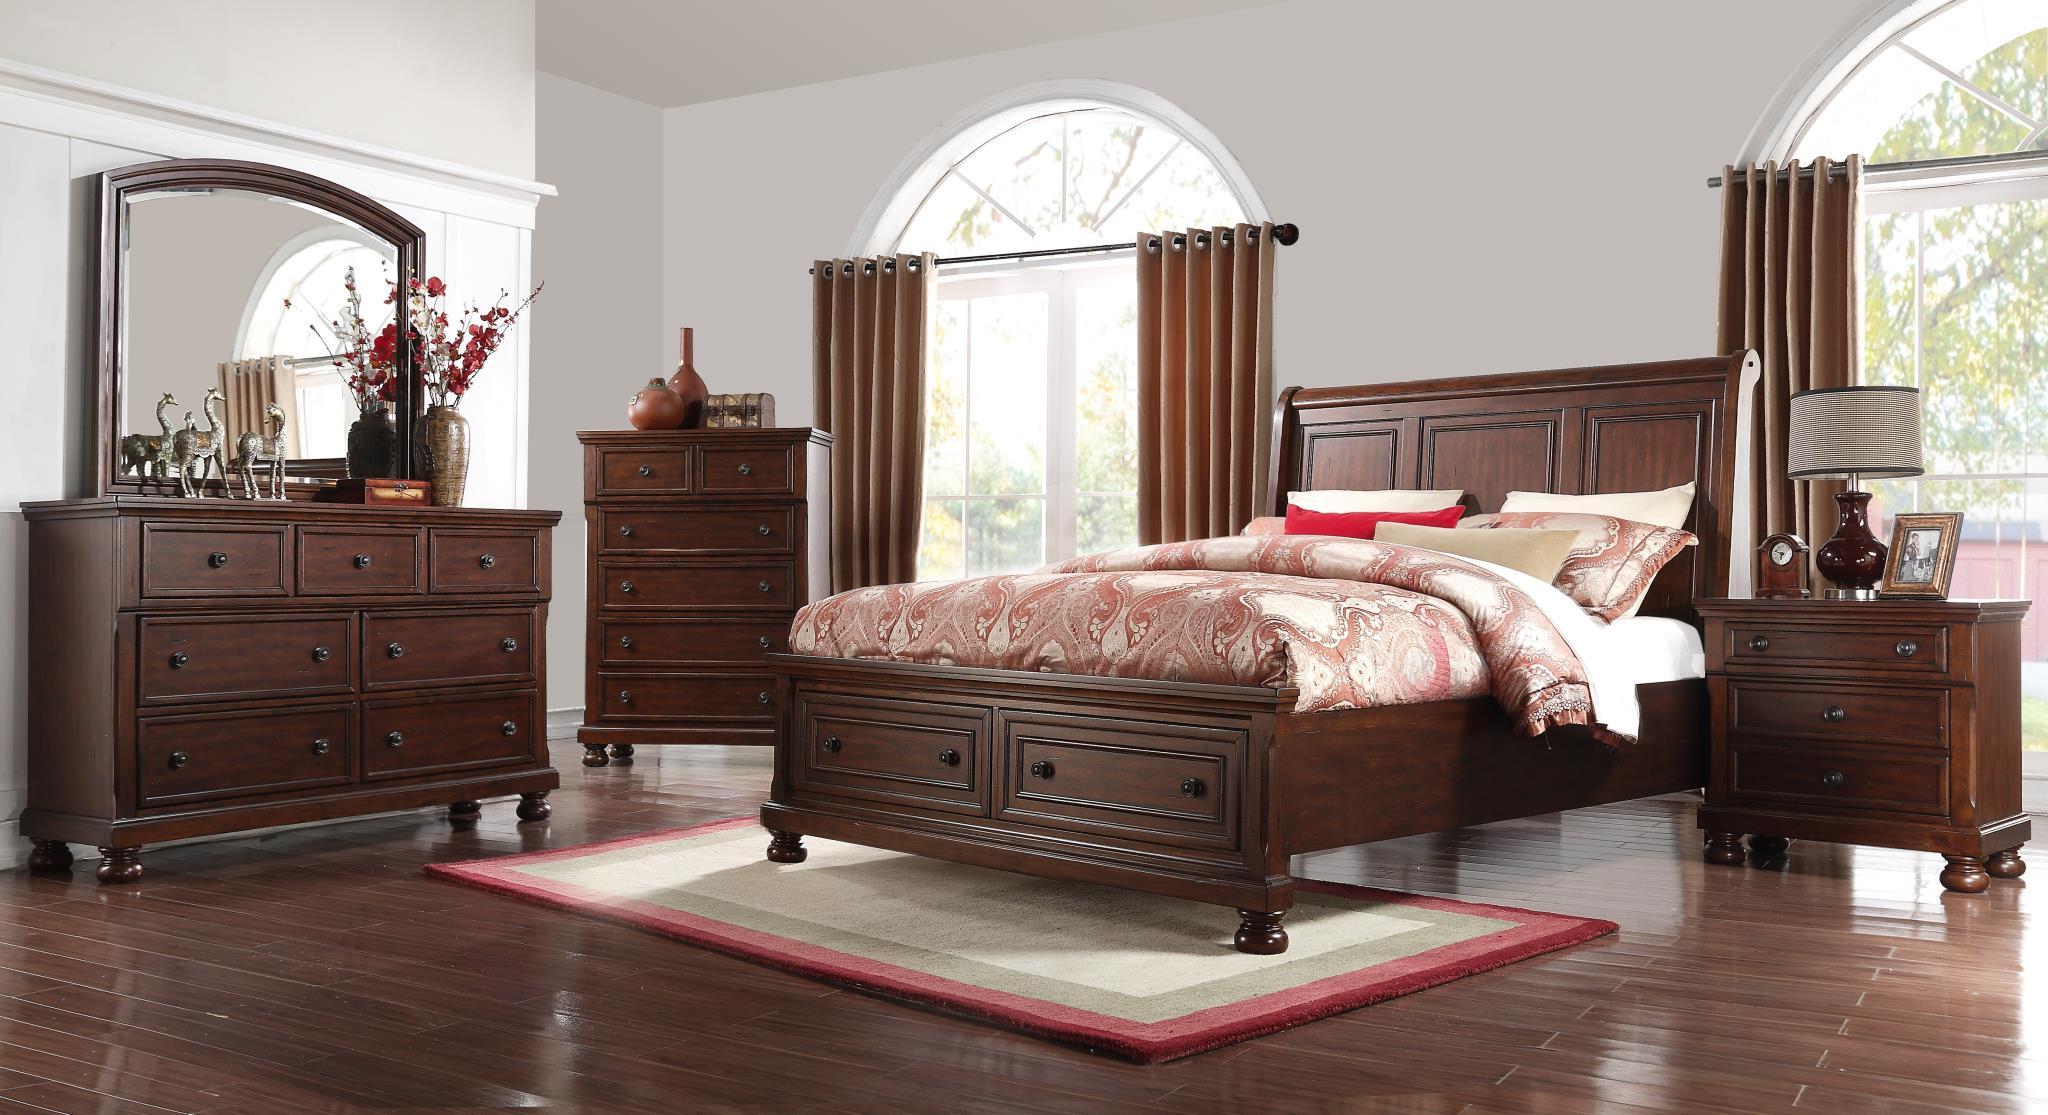 

        
Bernards Furniture PRESCOTT 1041 Storage Sleigh Bed Cherry  708939104140
